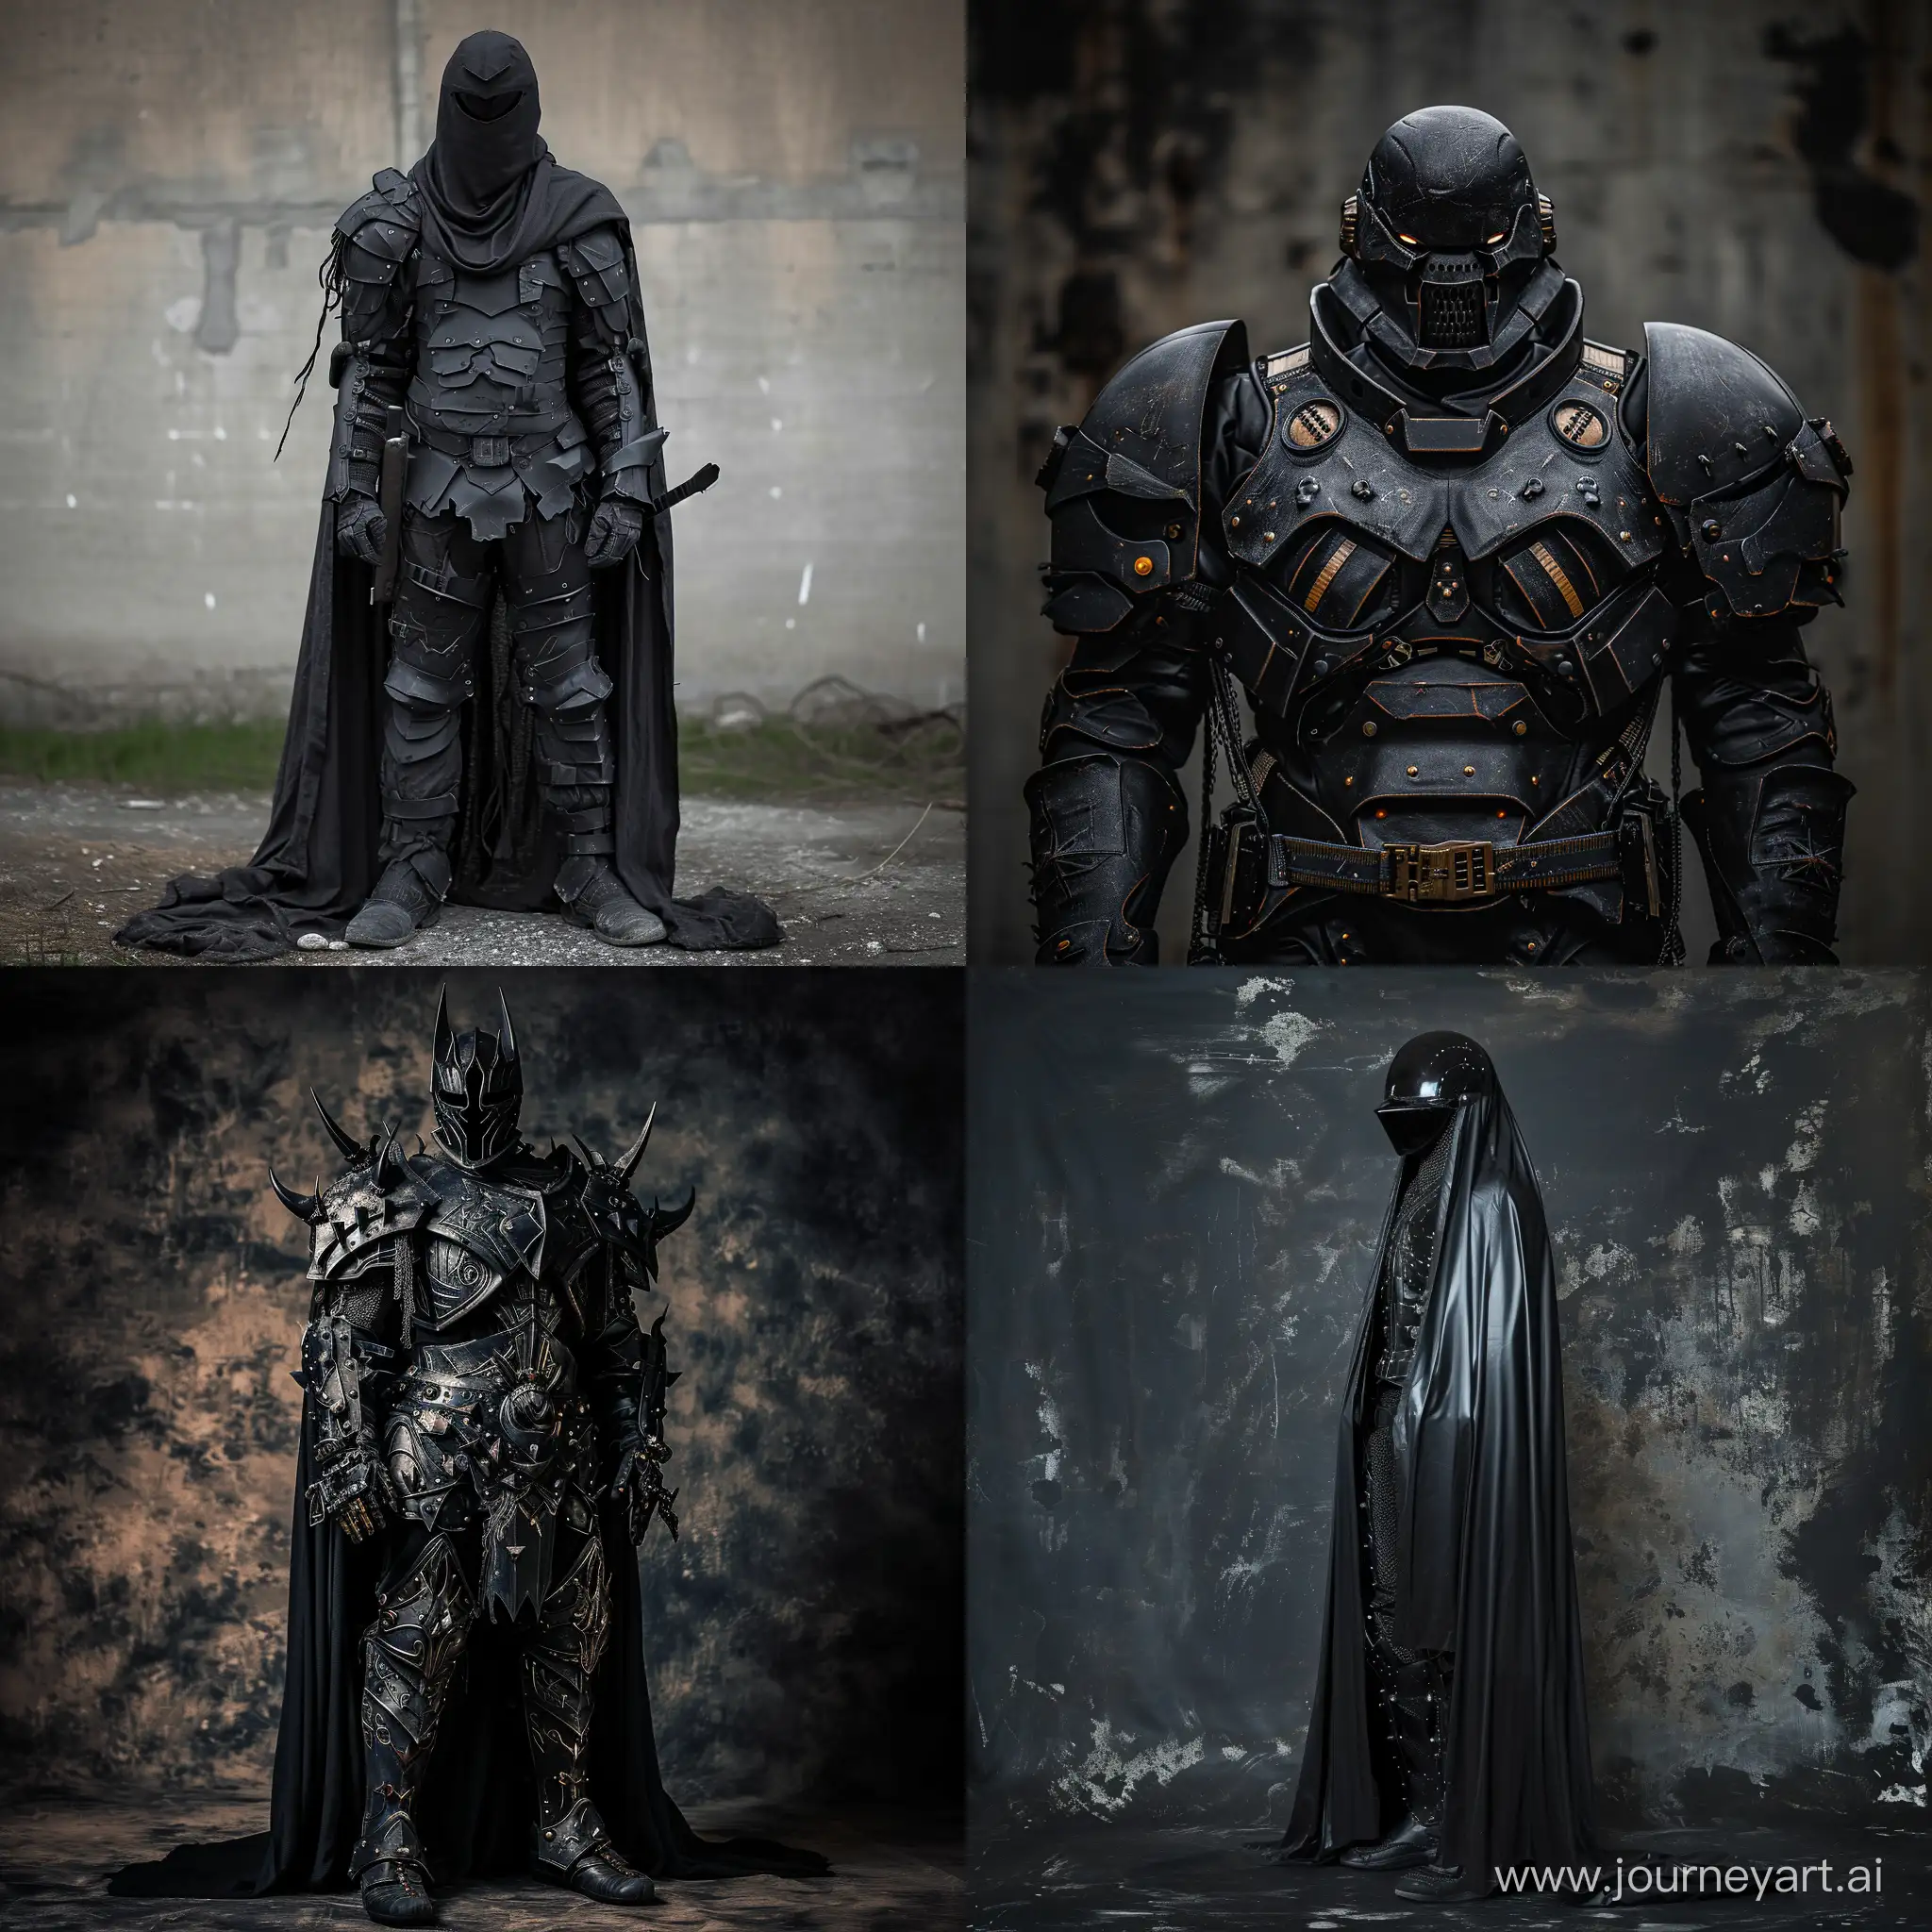 Enigmatic-Black-Knight-in-Cyberpunk-Fantasy-Armor